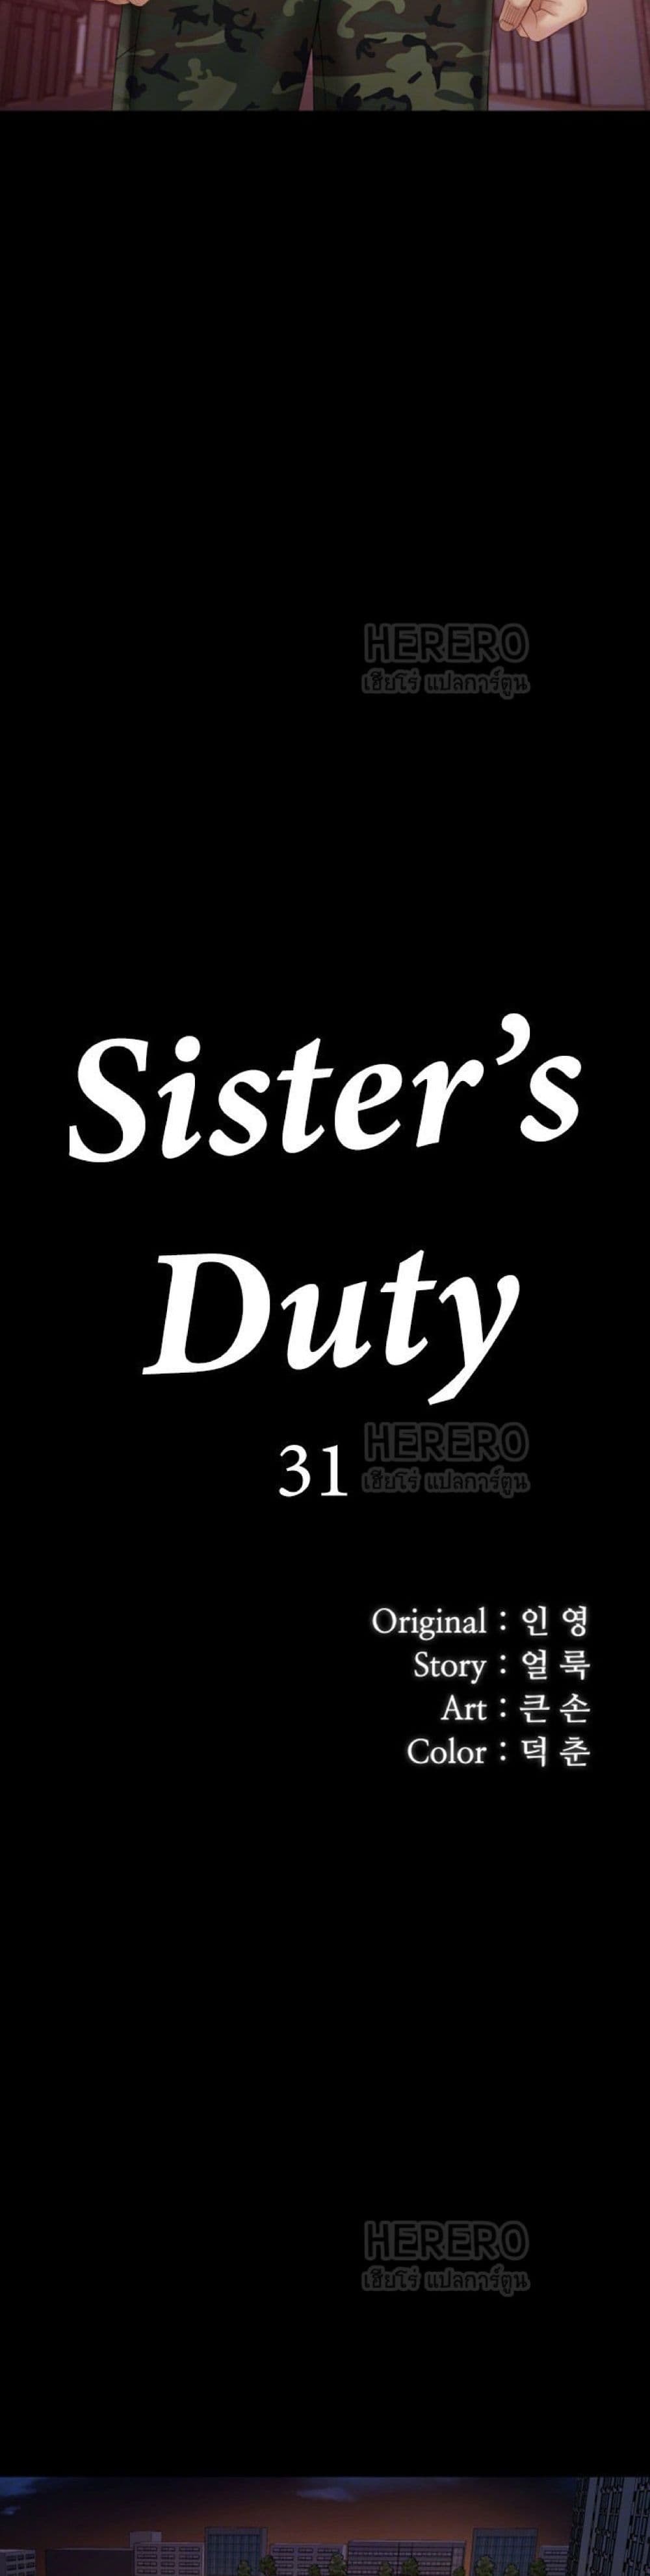 Sister's Duty 31-31